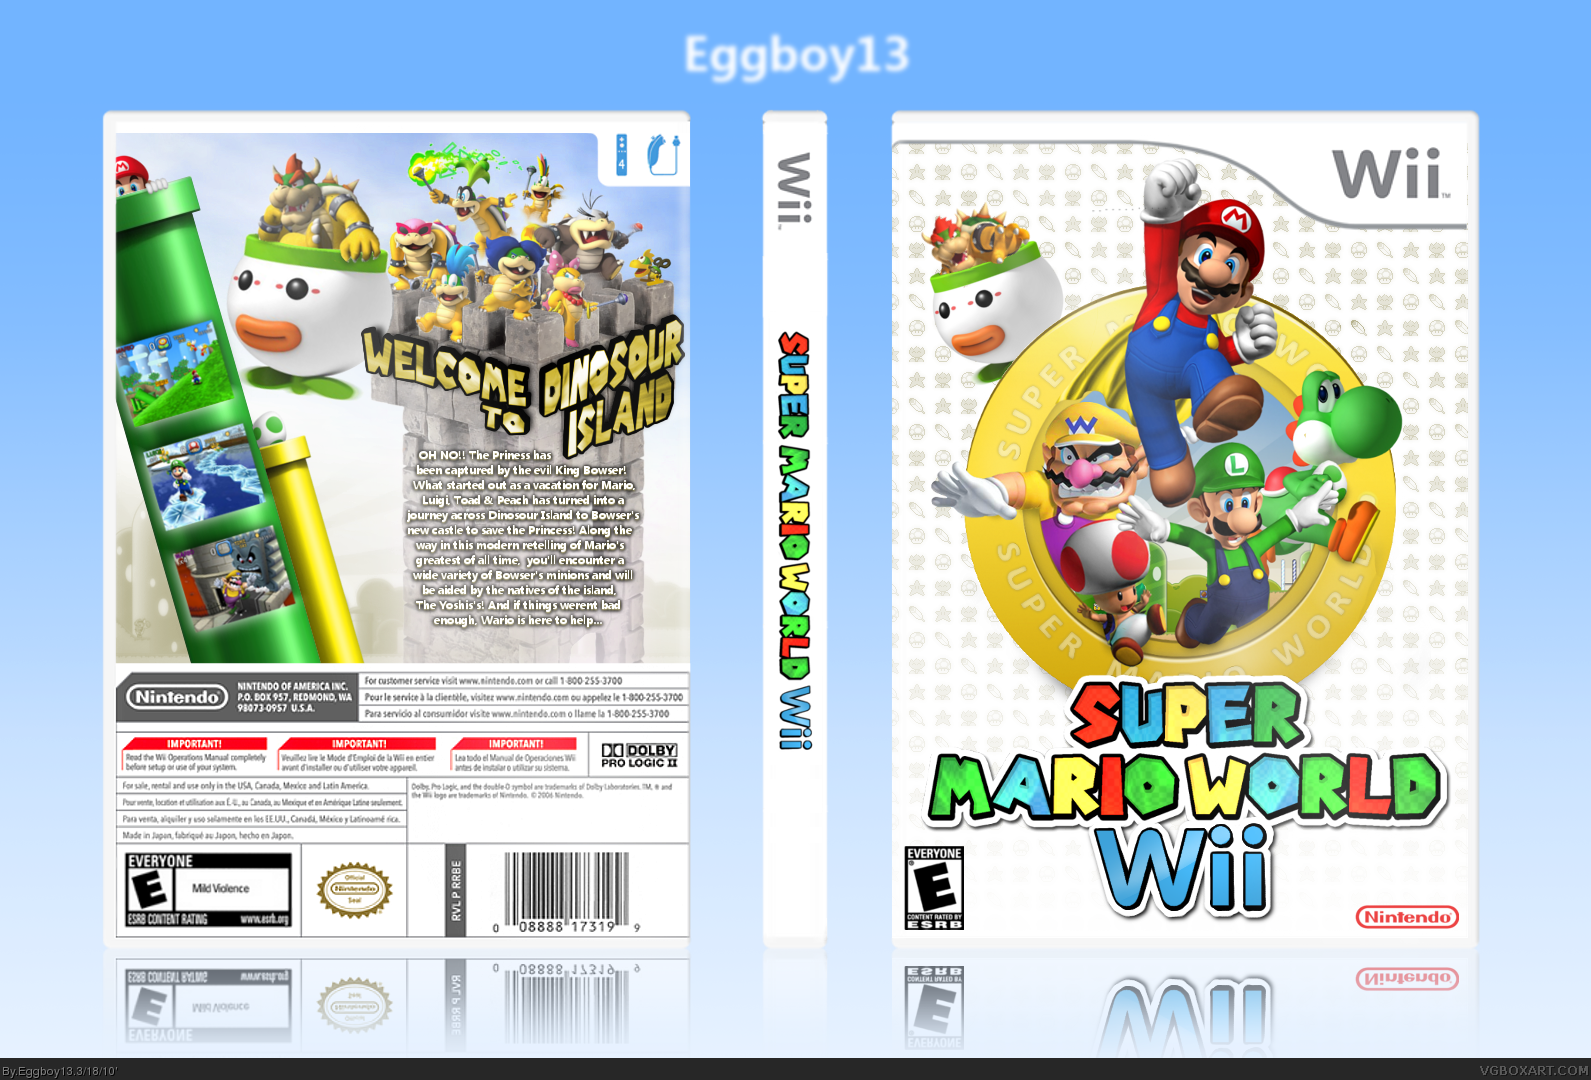 Super Mario World: Wii box cover